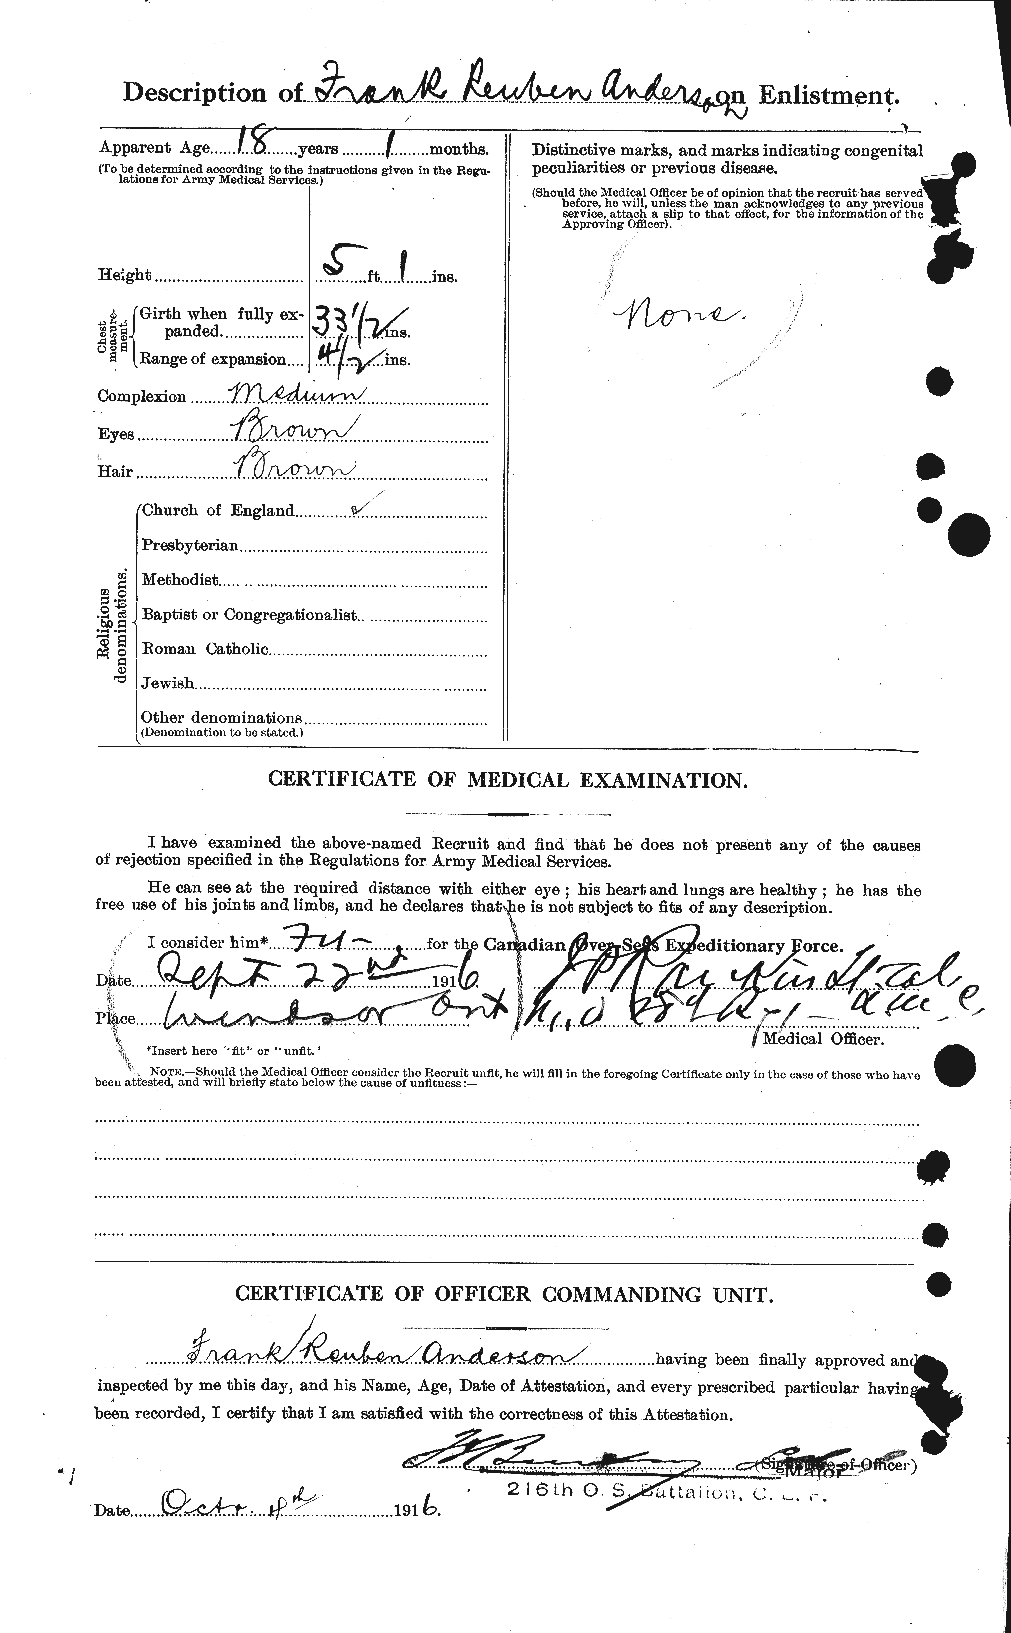 Dossiers du Personnel de la Première Guerre mondiale - CEC 209843b